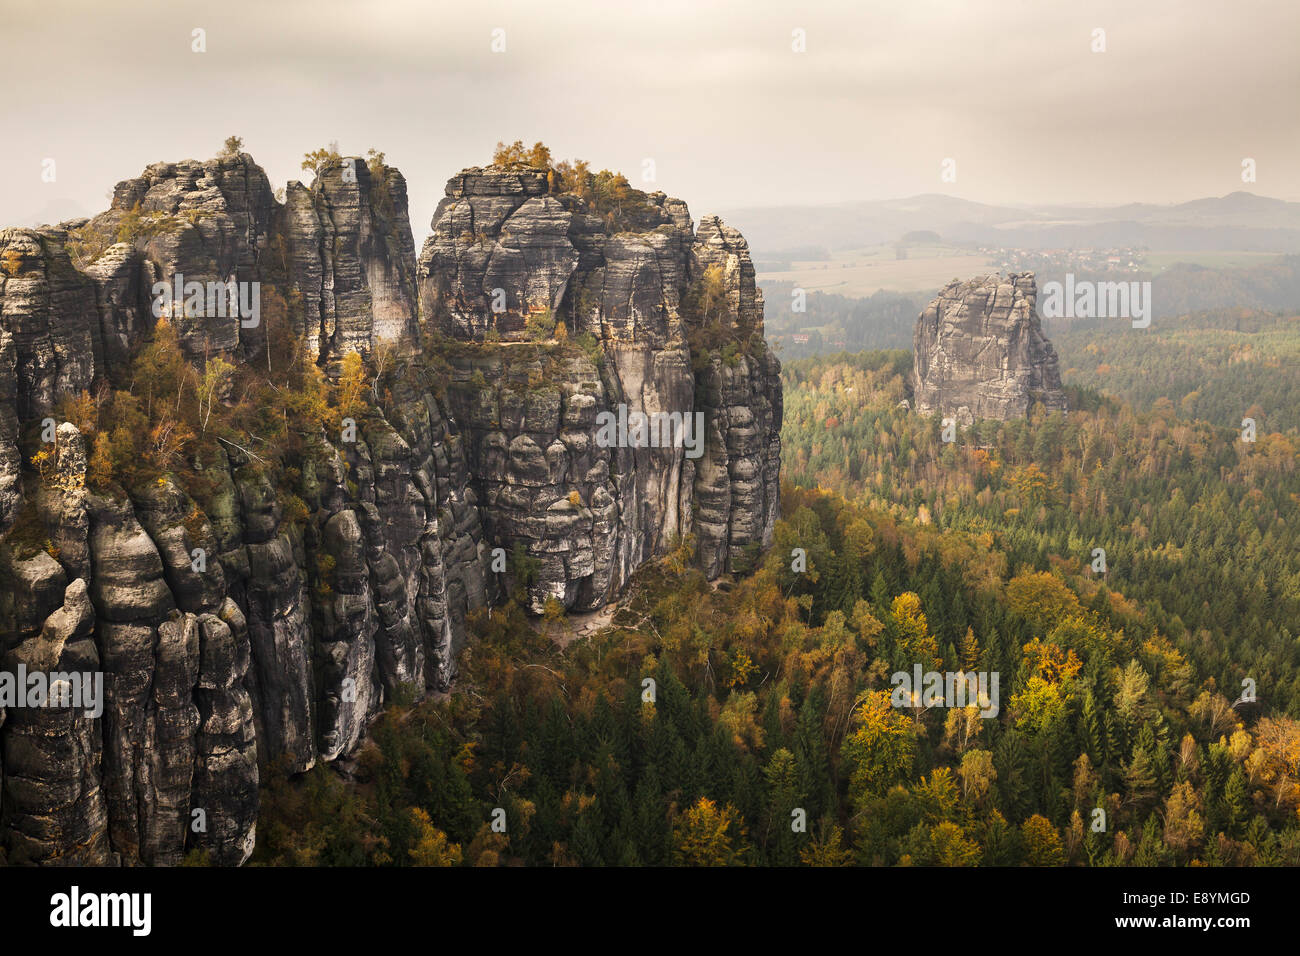 view of the Schrammstein rocks in the Elbe Sandstone mountains, Sachsische Schweiz, Saxony, Germany Stock Photo